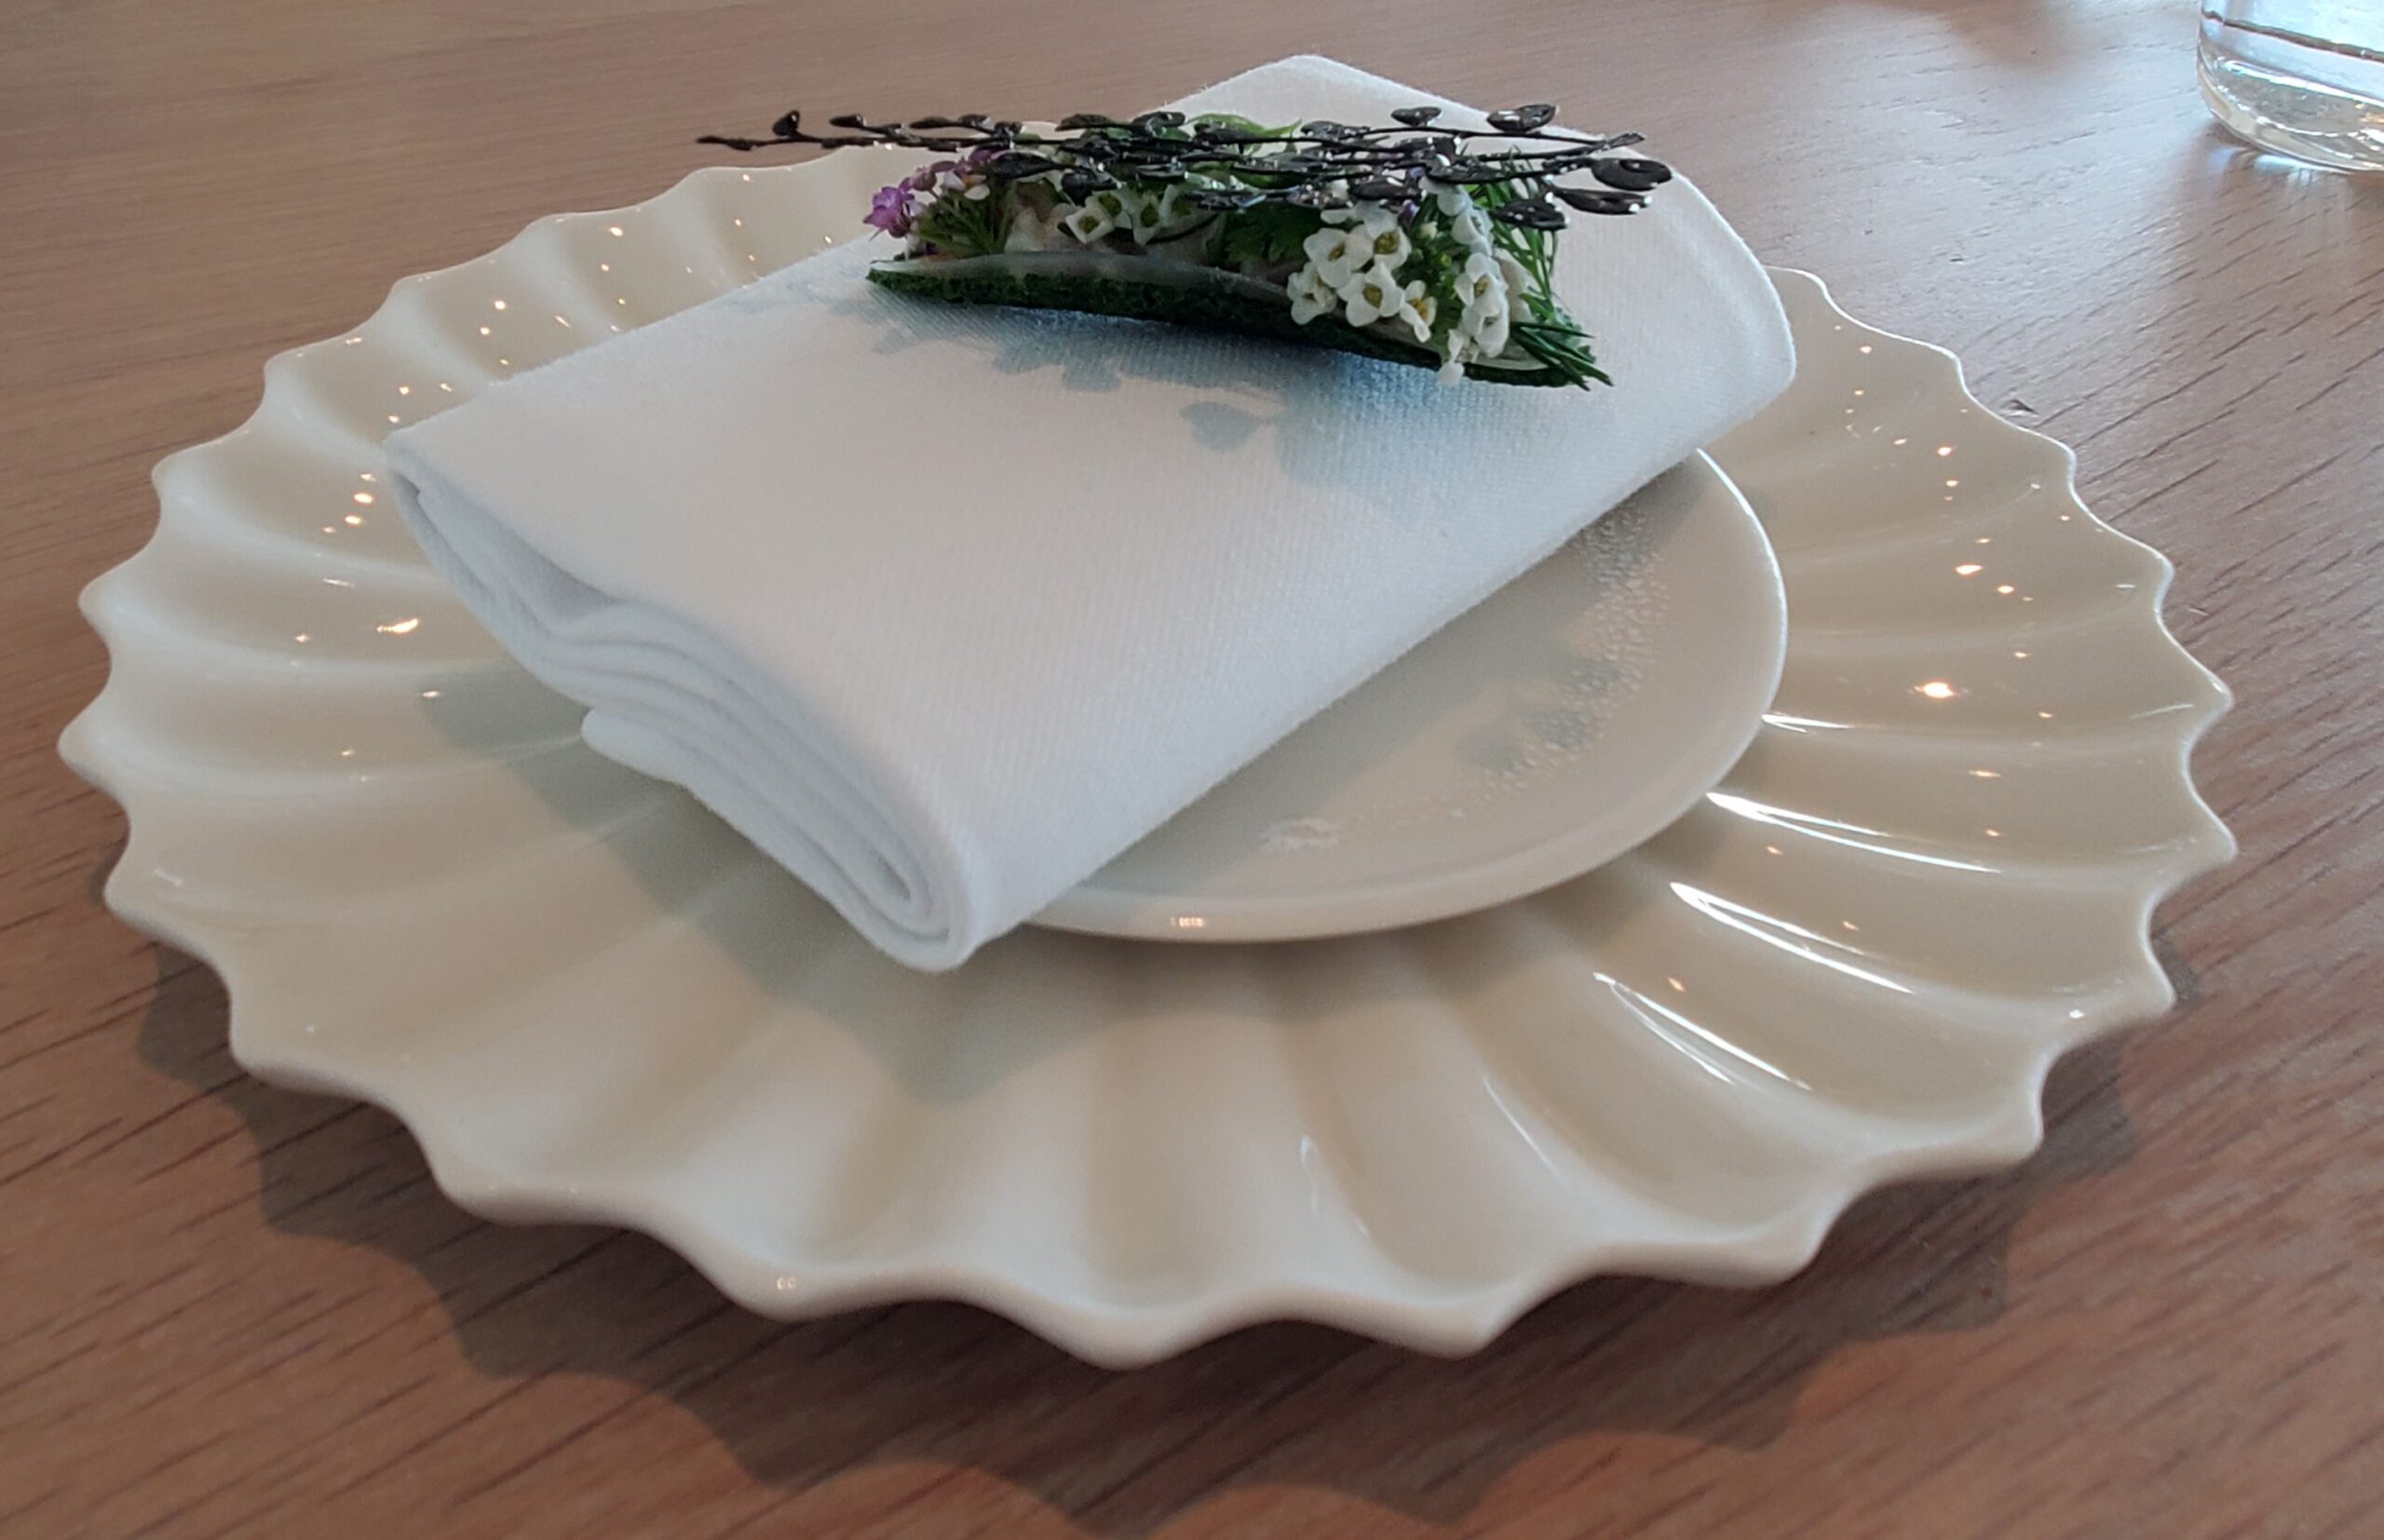 a napkin on a plate